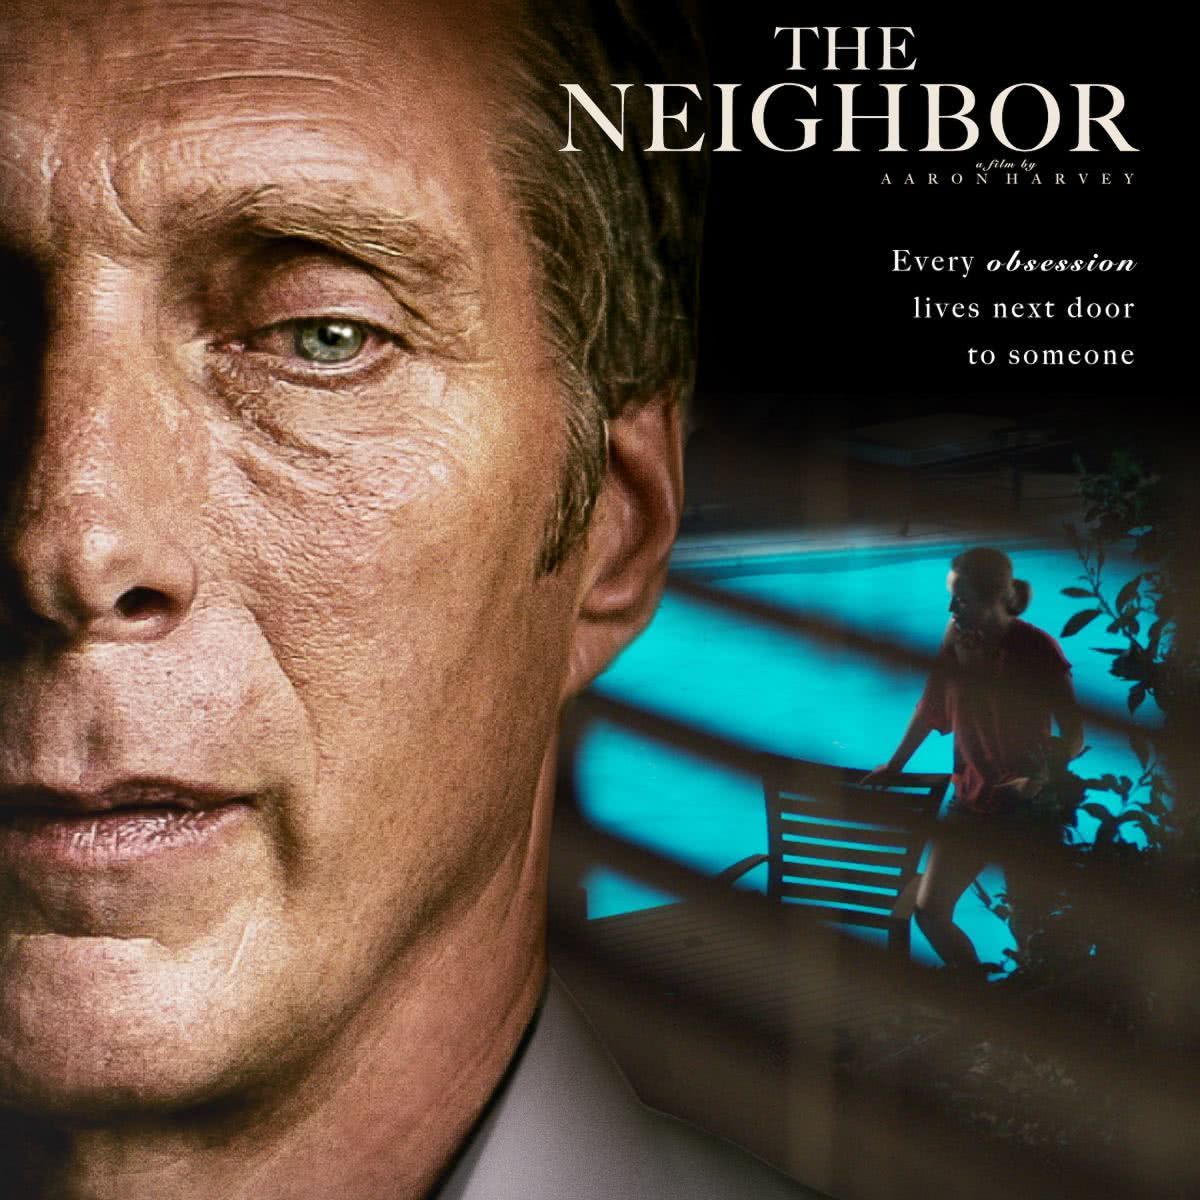 Filmed neighbor